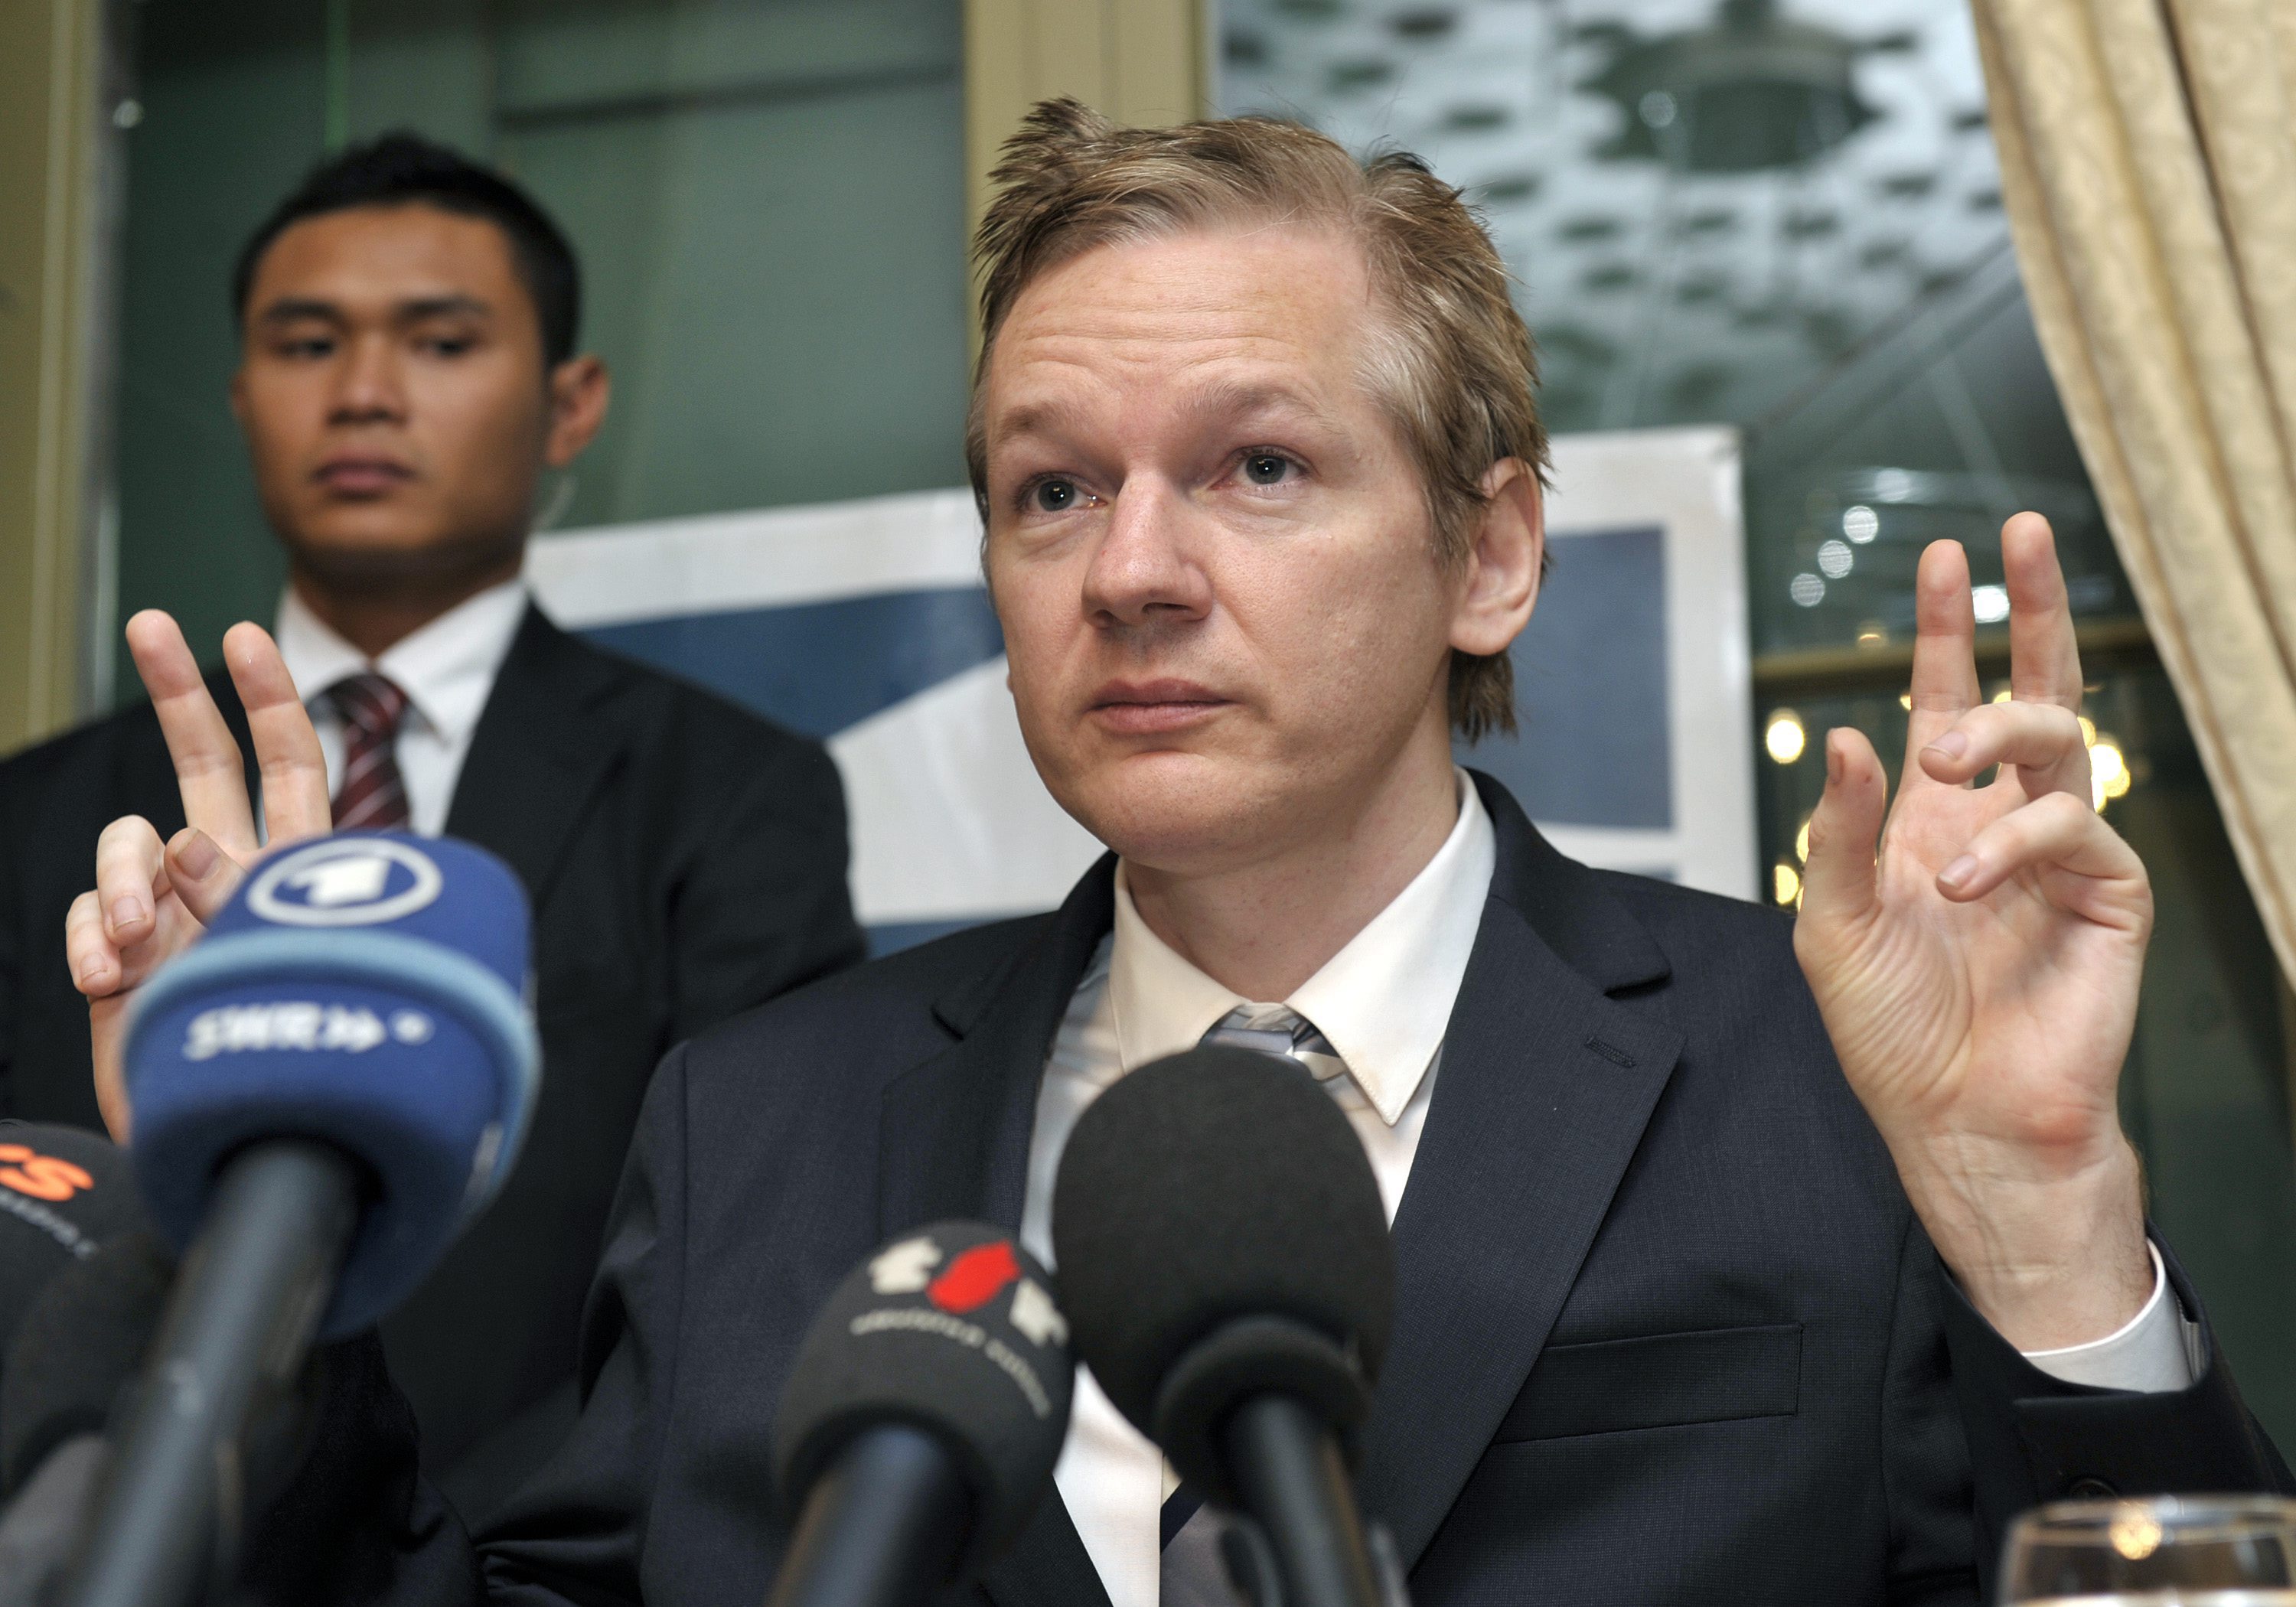 Den svenska Åklagarmyndigheten påpekar att häktningen av Assange är fastställd i Högsta domstolen och att FN-gruppens utlåtanden "inte har någon formell påverkan på den pågående utredningen" om misstänkta sexbrott.